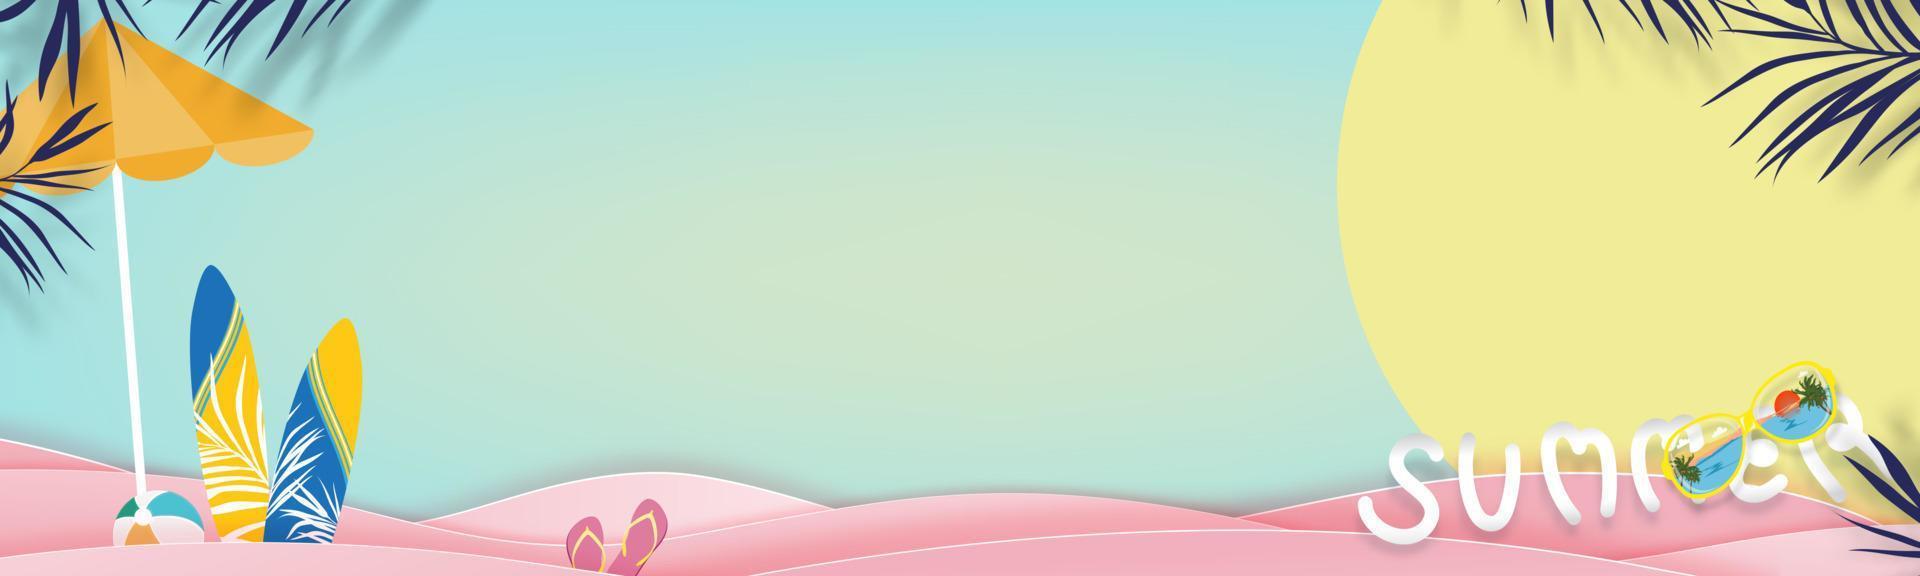 hola fondo de verano con tema de vacaciones de vacaciones en la playa con tabla de surf, gafas de sol, pelota de playa en la capa de onda rosa, corte de papel vectorial de diseño de verano tropical con hojas de palma en el fondo del cielo azul vector